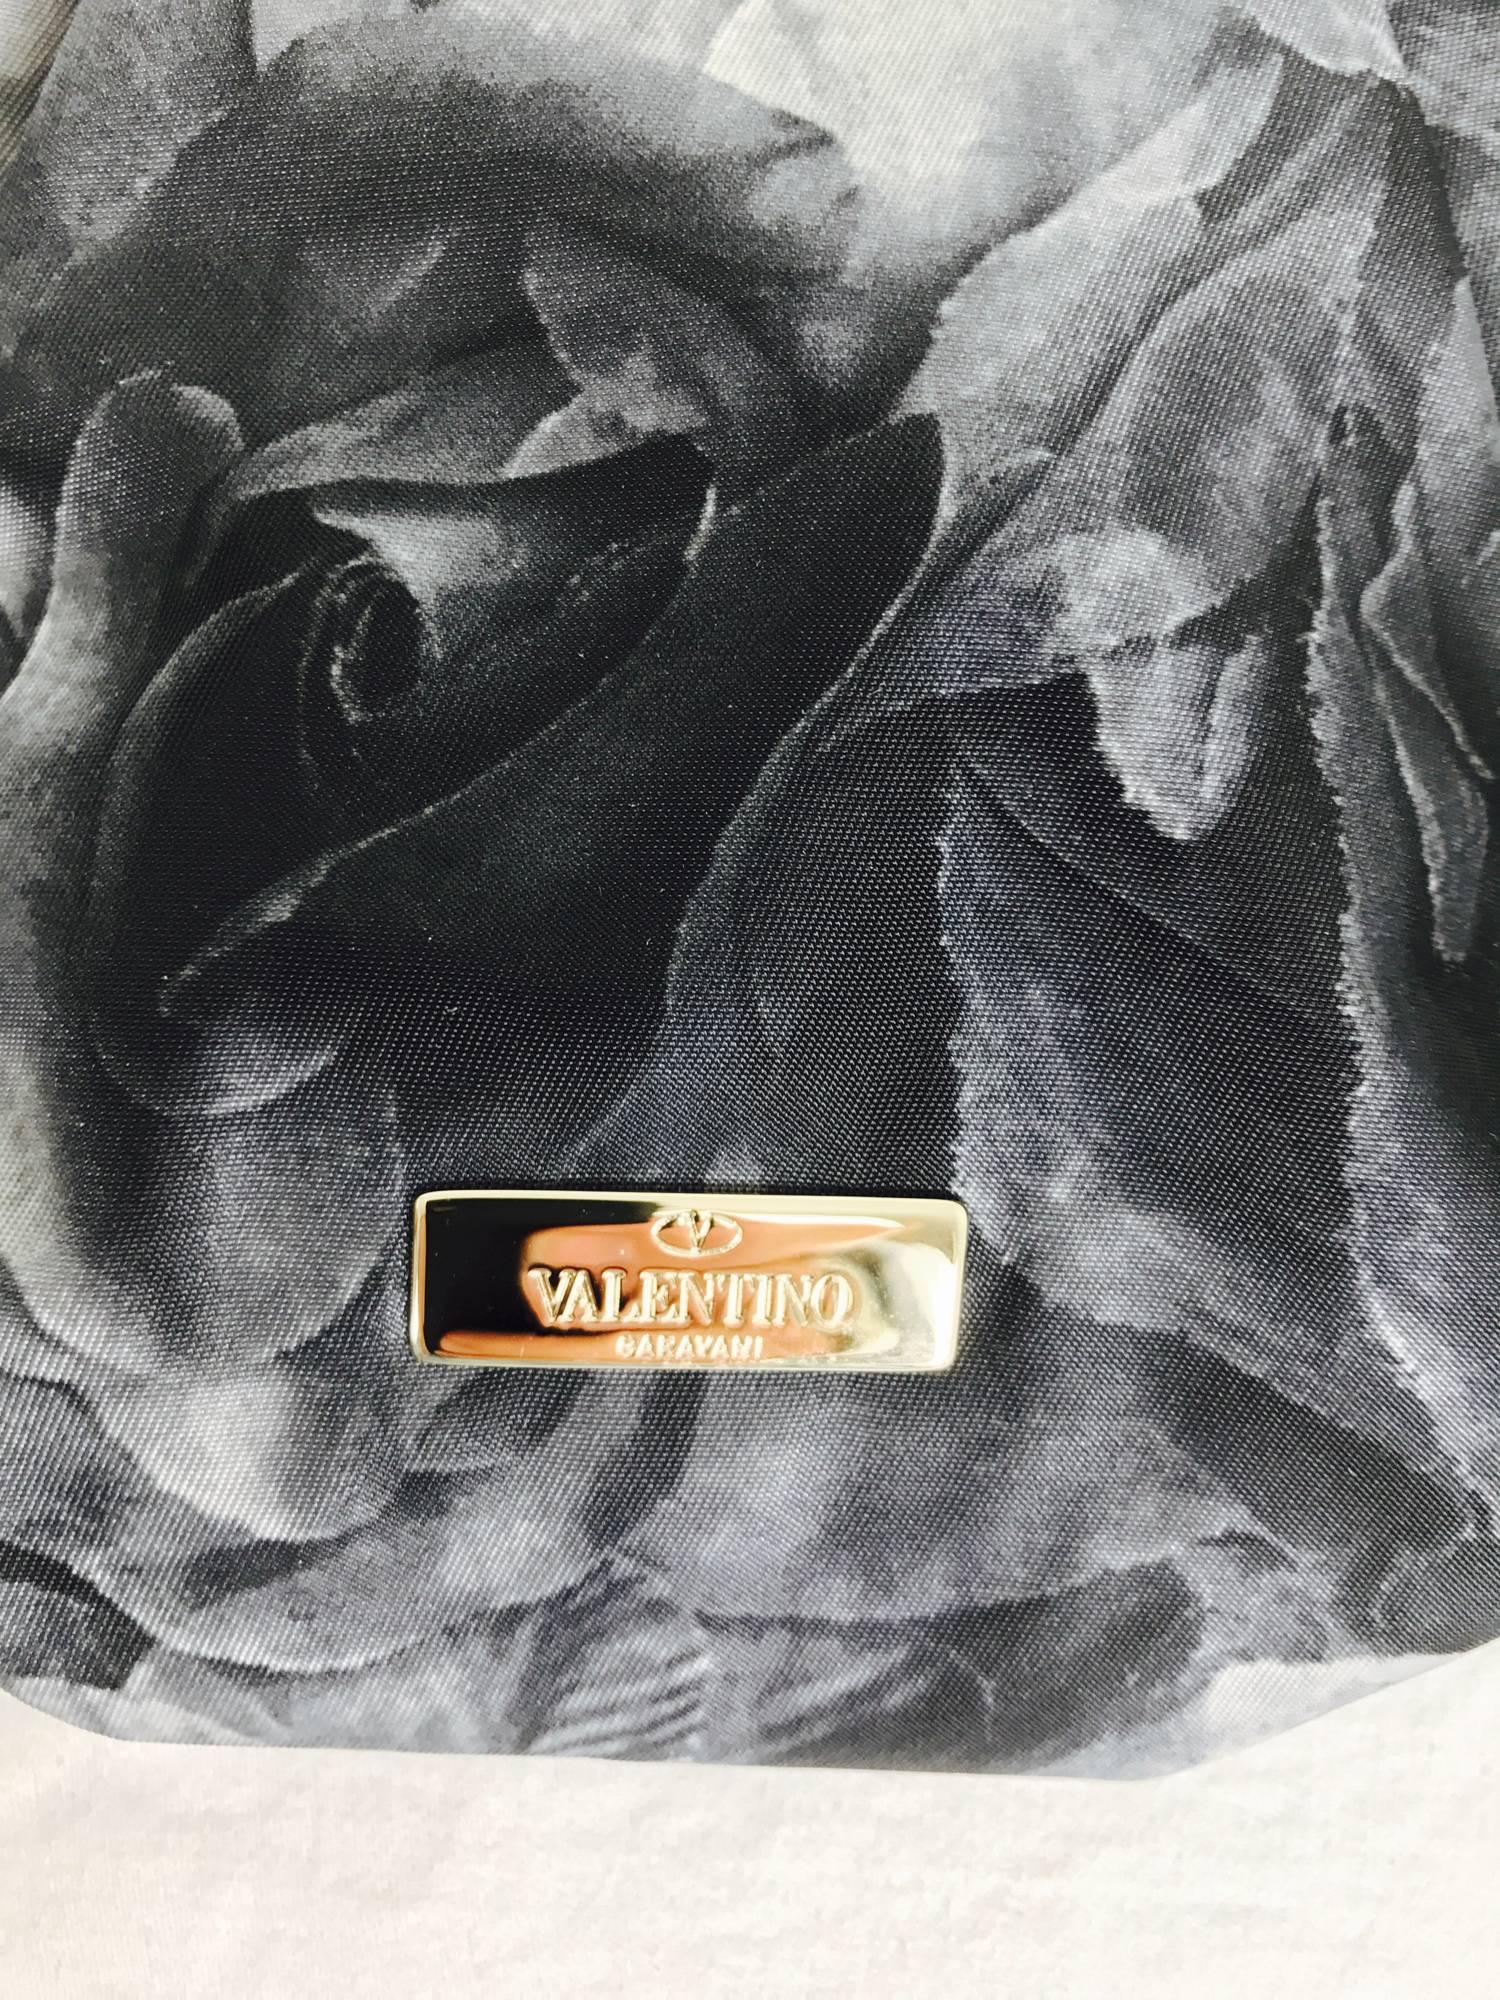 Black Valentino black roses zipper top clutch handbag 